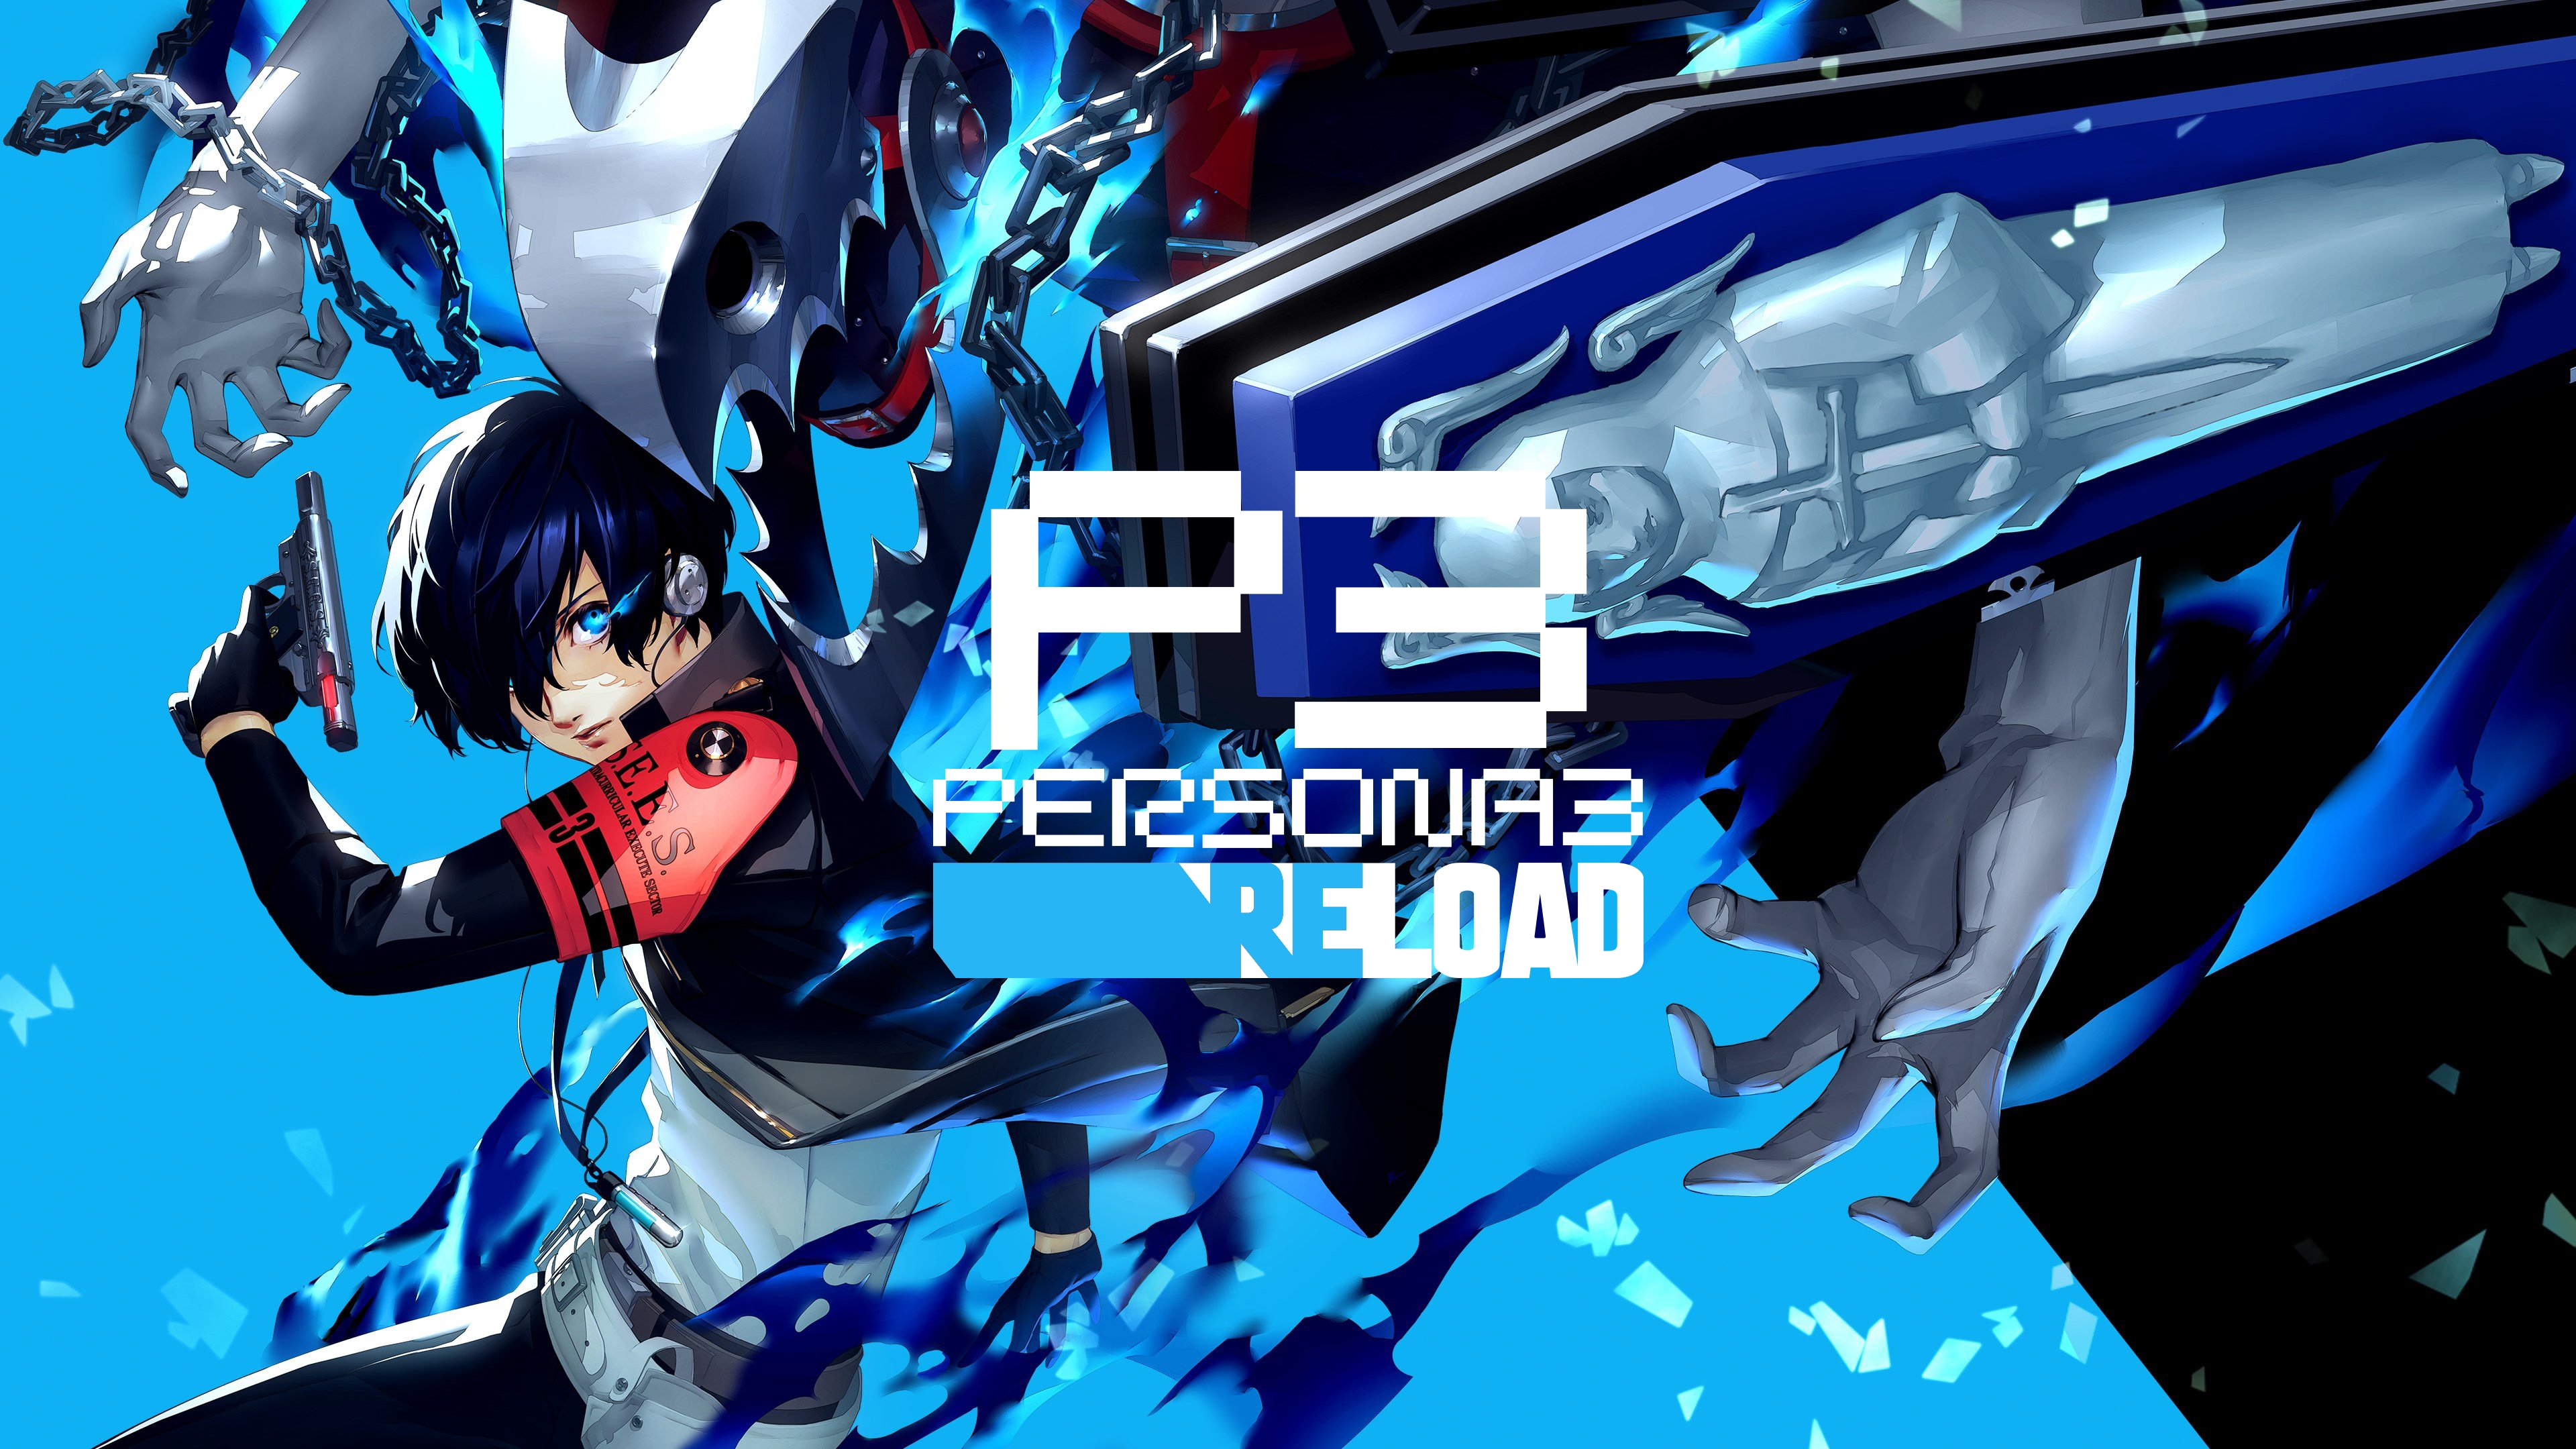 Het aantal verkochte exemplaren van Persona 3 Reload overschreed in de eerste week de grens van één miljoen.